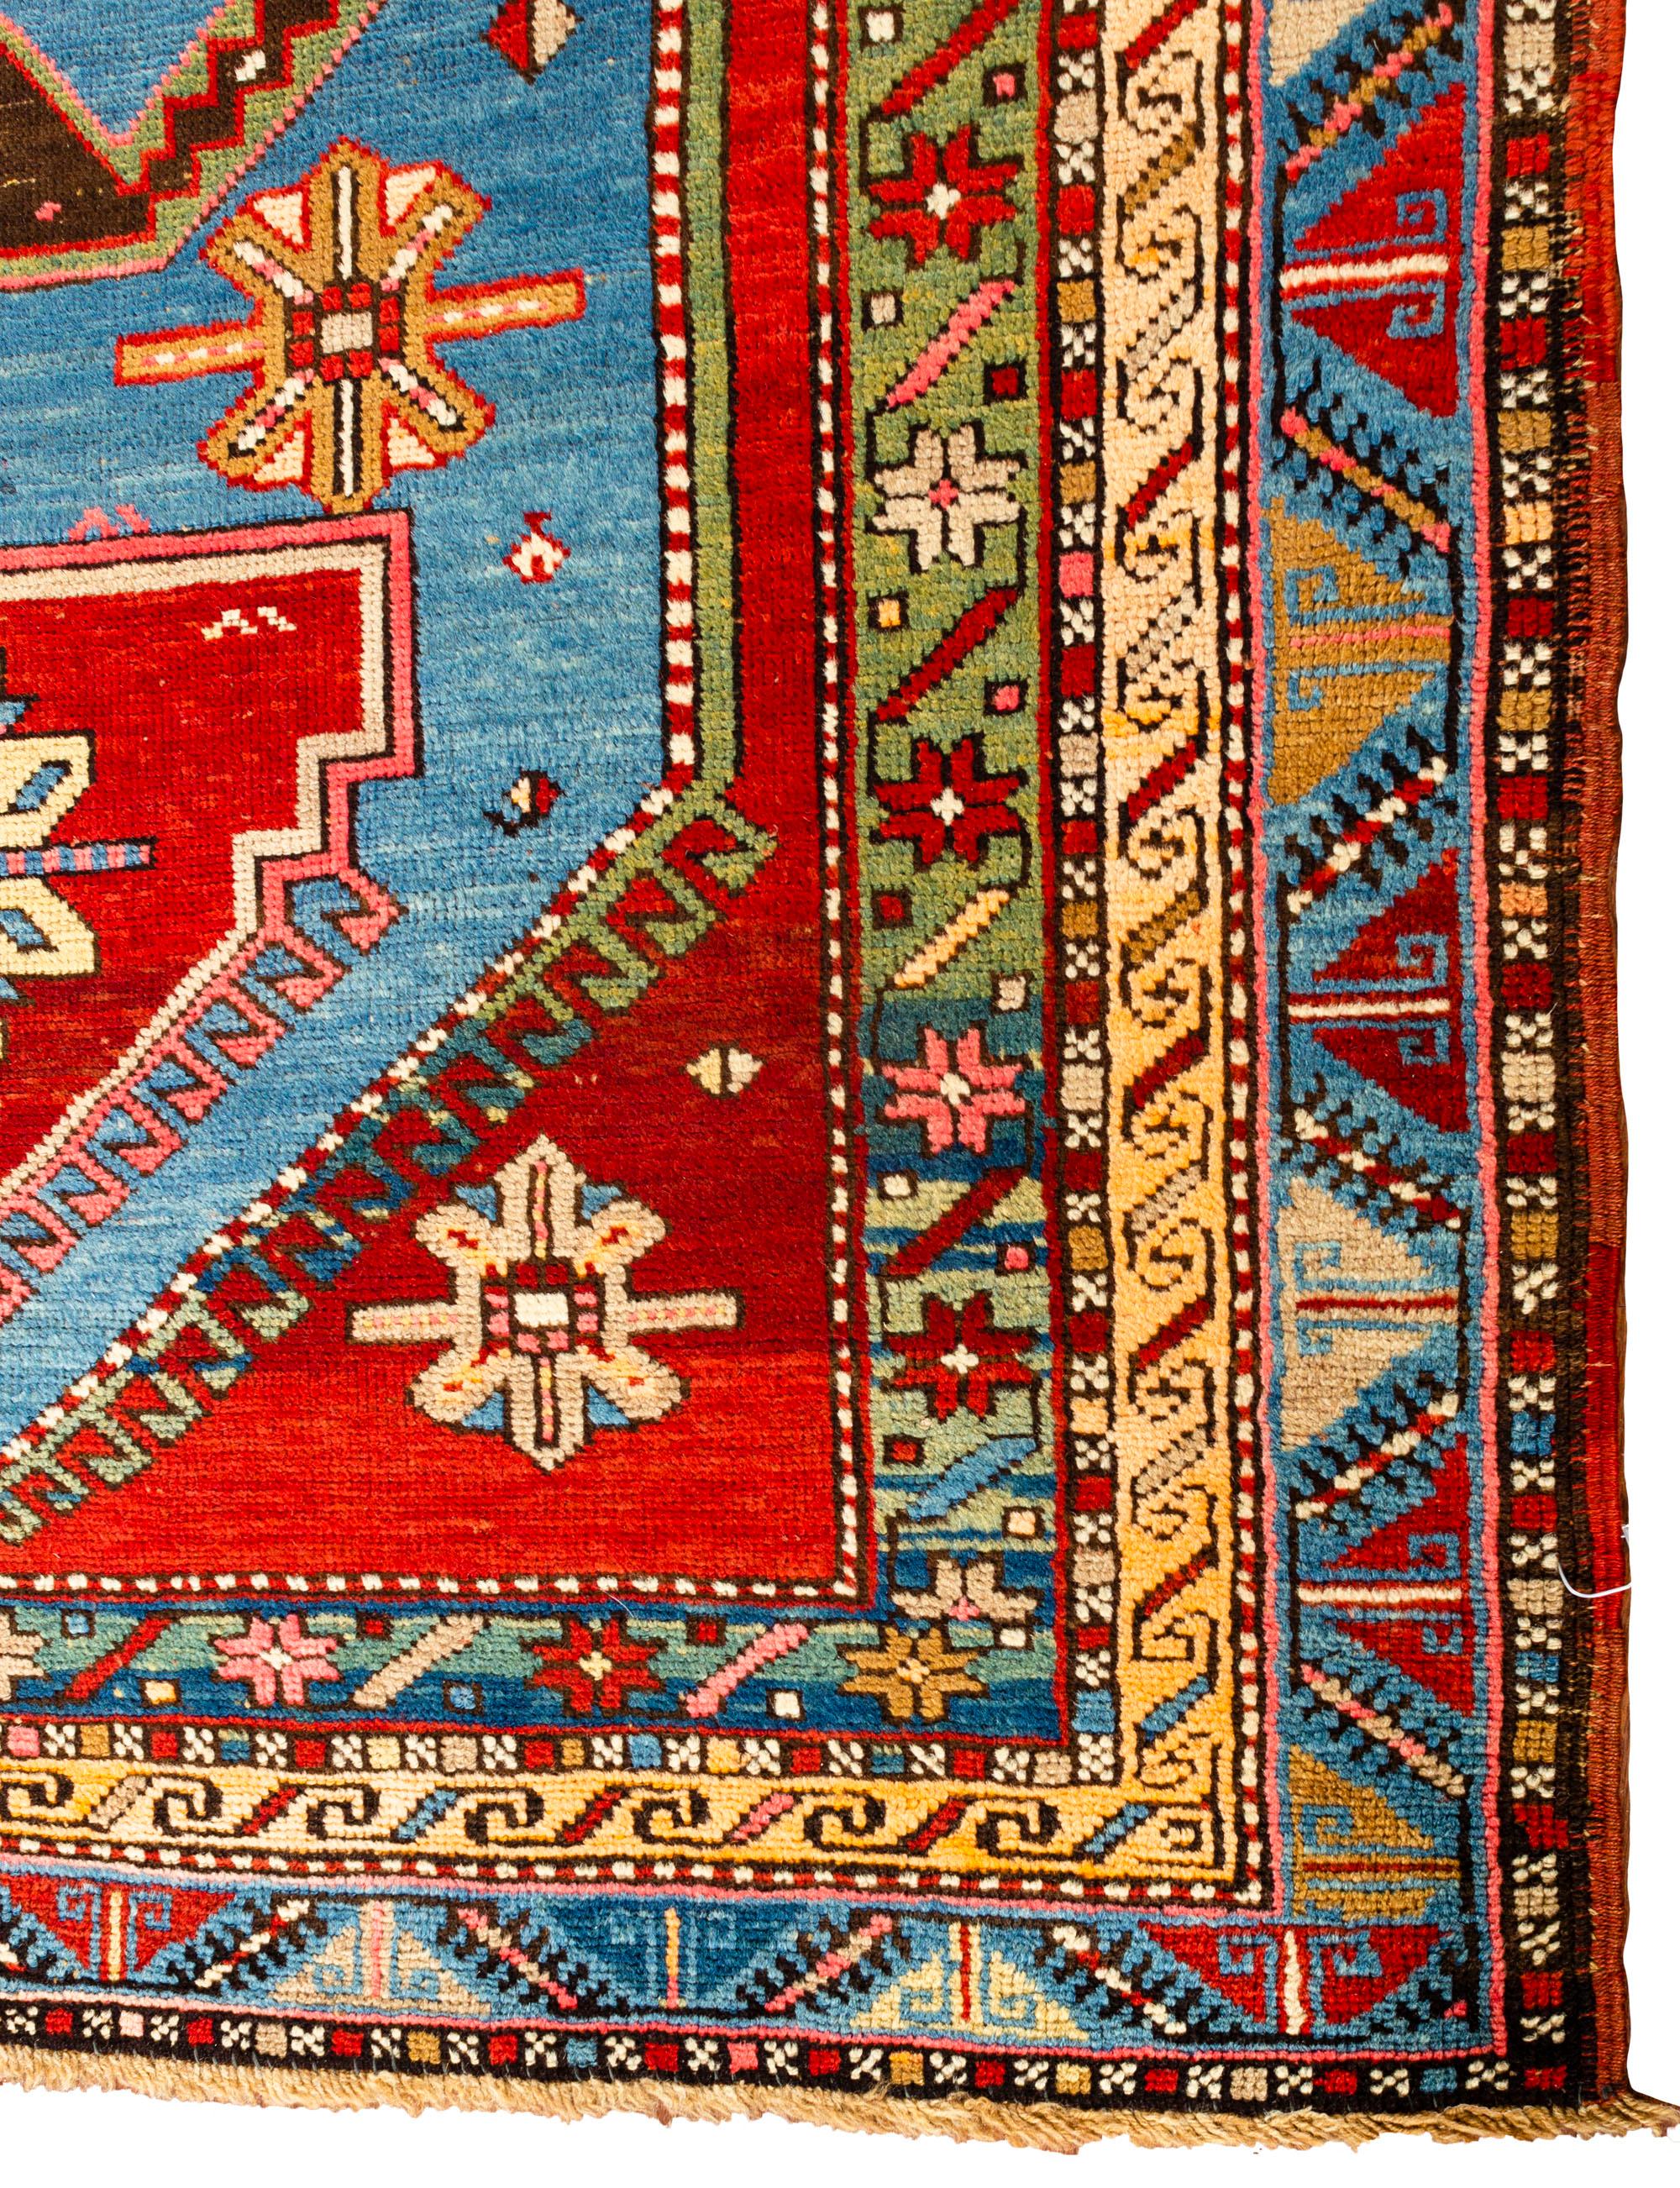 Ein südwestlicher kaukasischer Kazak-Teppich, handgewebt um 1880, mit kräftigen und lebhaften Farben, die diesem Stammesteppich einen wahren Sinn für Schönheit verleihen. Das Kaukasusgebirge zwischen Persien und Russland ist zu Recht berühmt für